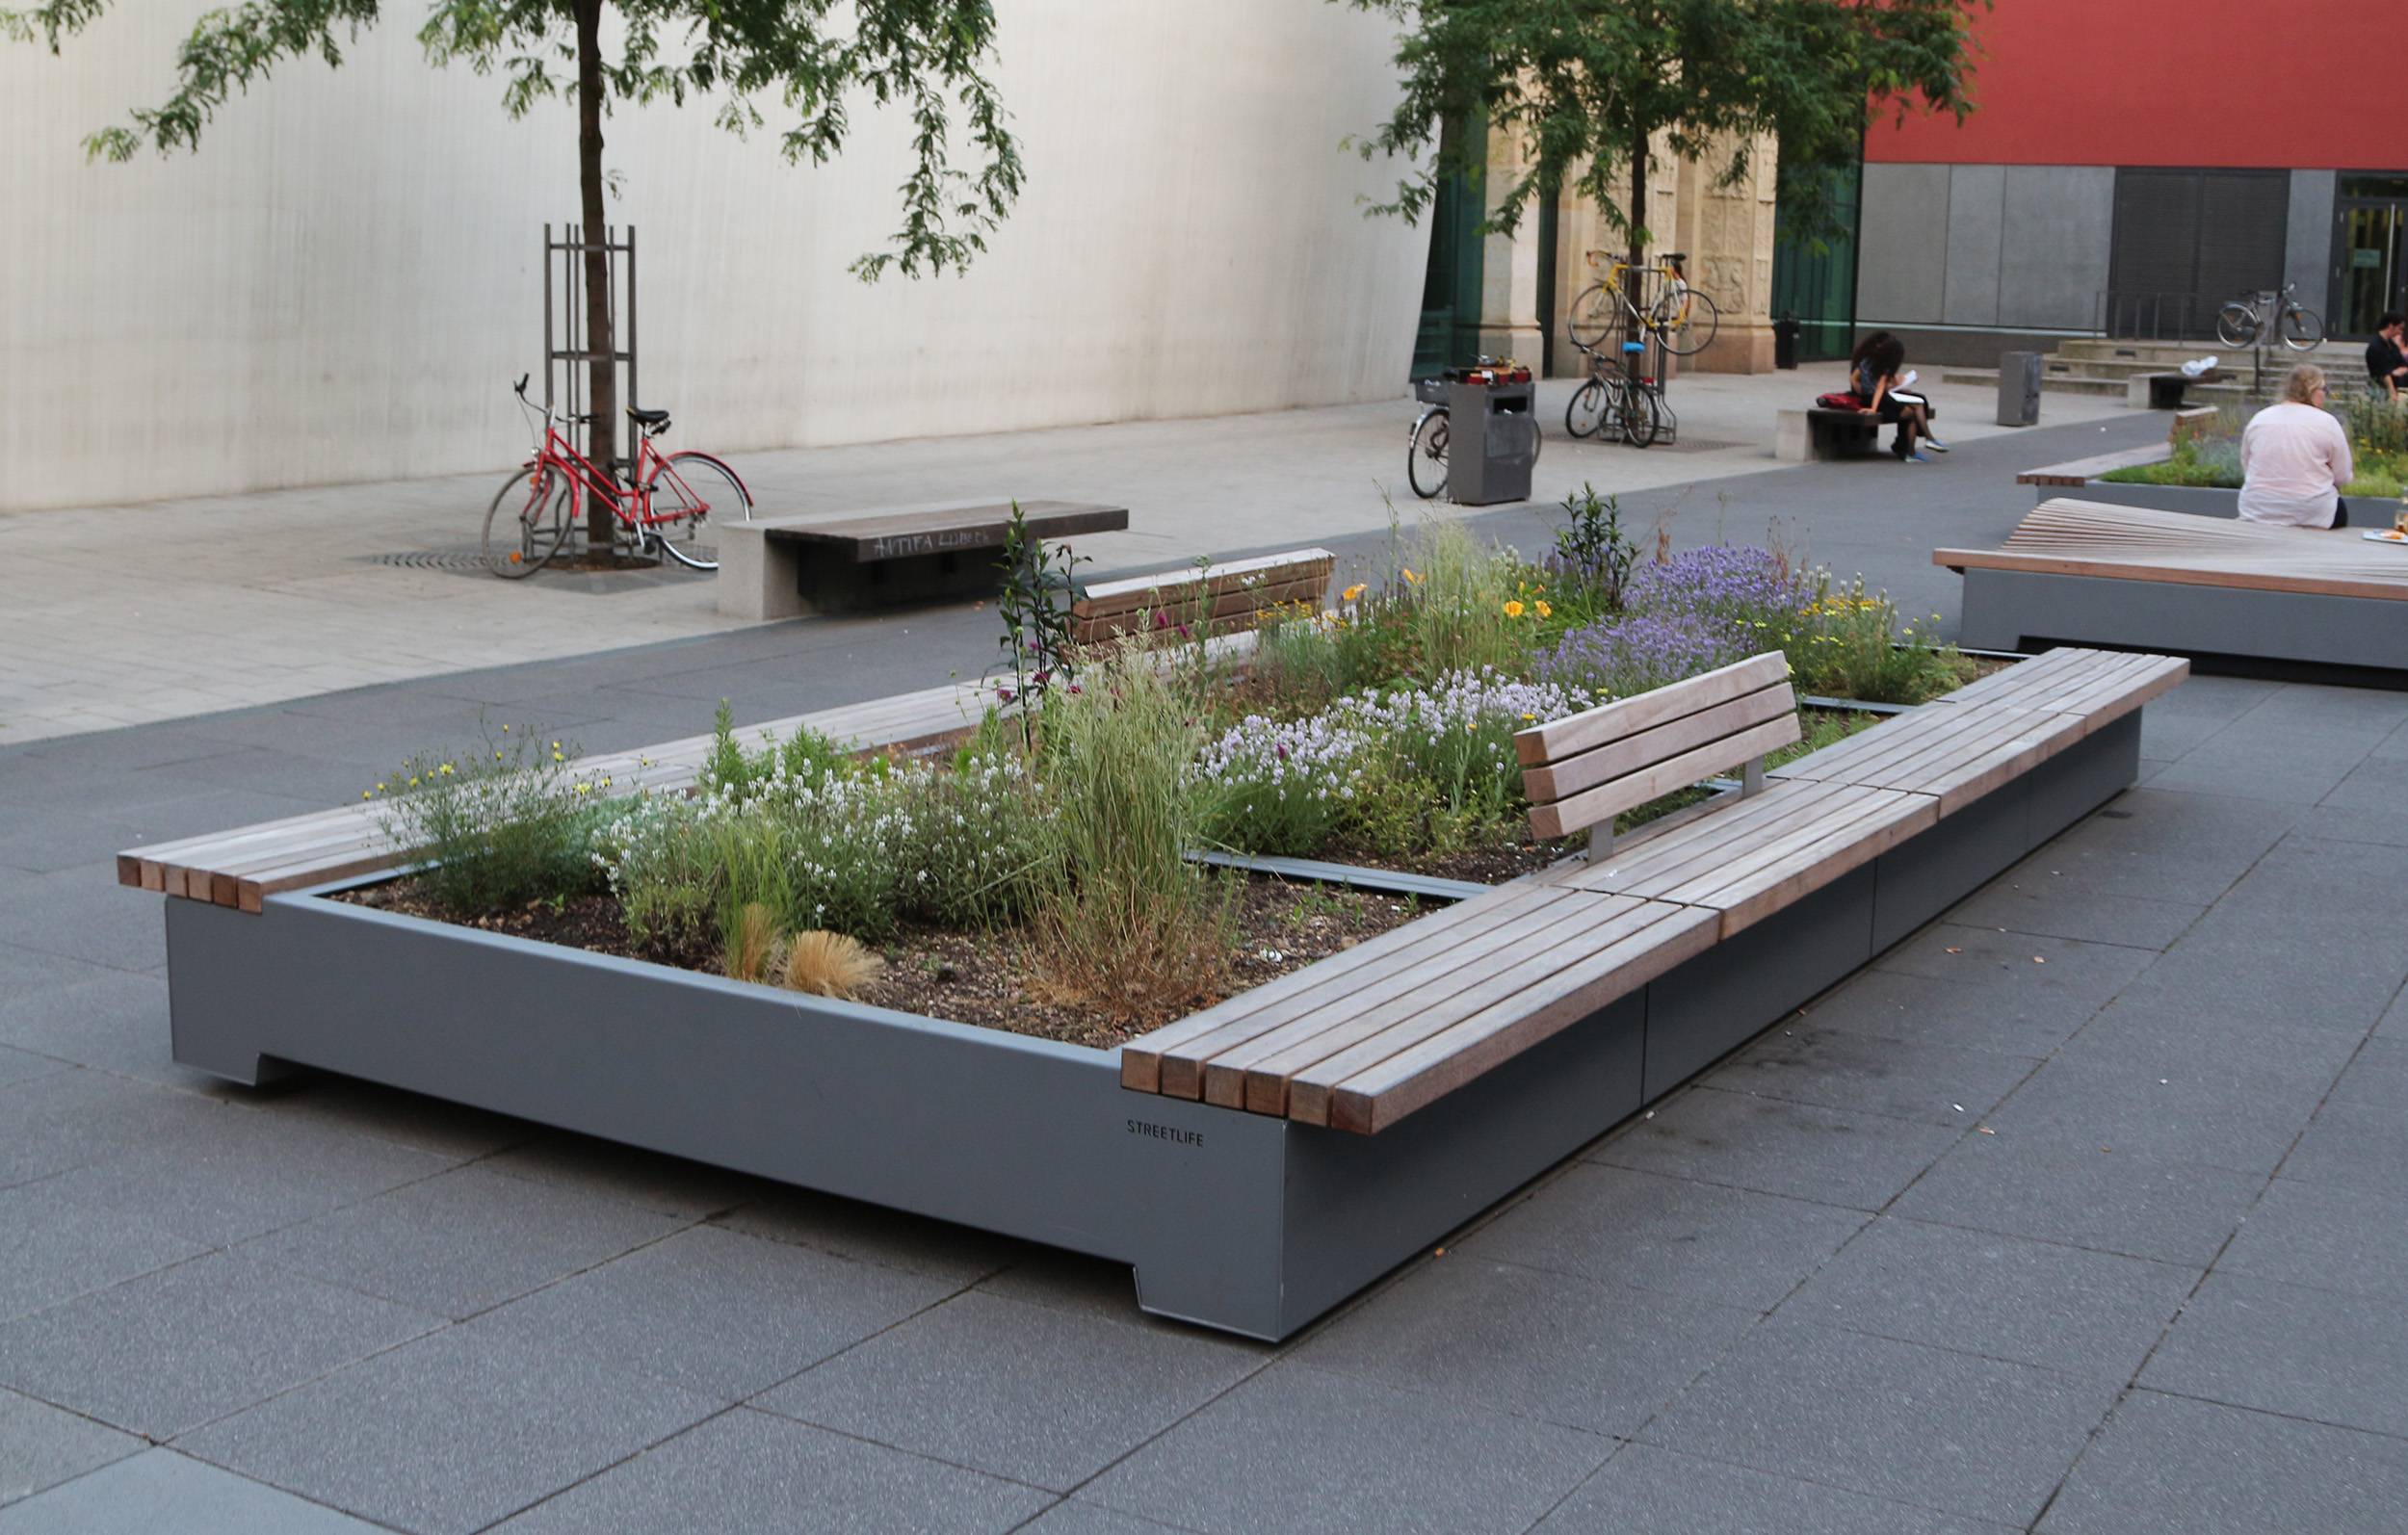 Малые архитектурные формы в ландшафтном дизайне сада: варианты из дерева, бетона, металла, гипса (+фото, видео)